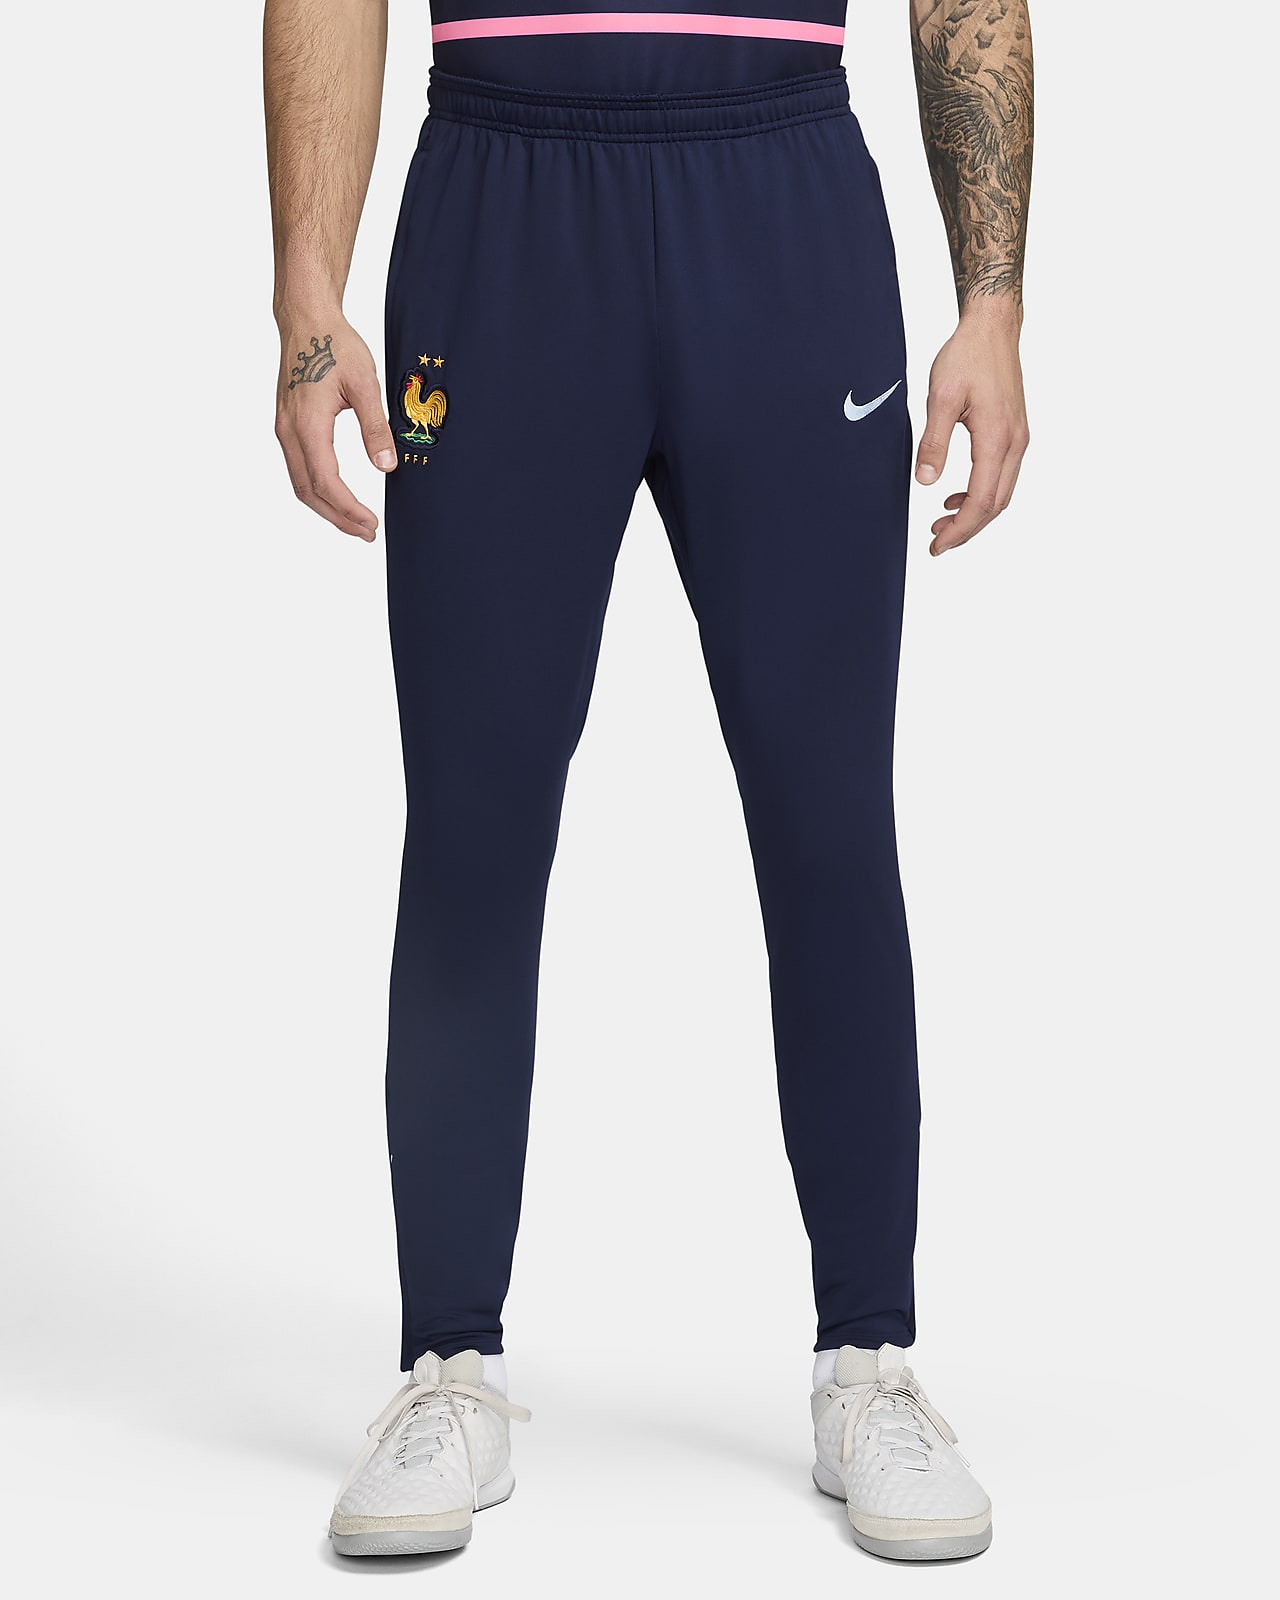 FFF Strike Men's Nike Dri-FIT Football Knit Pants